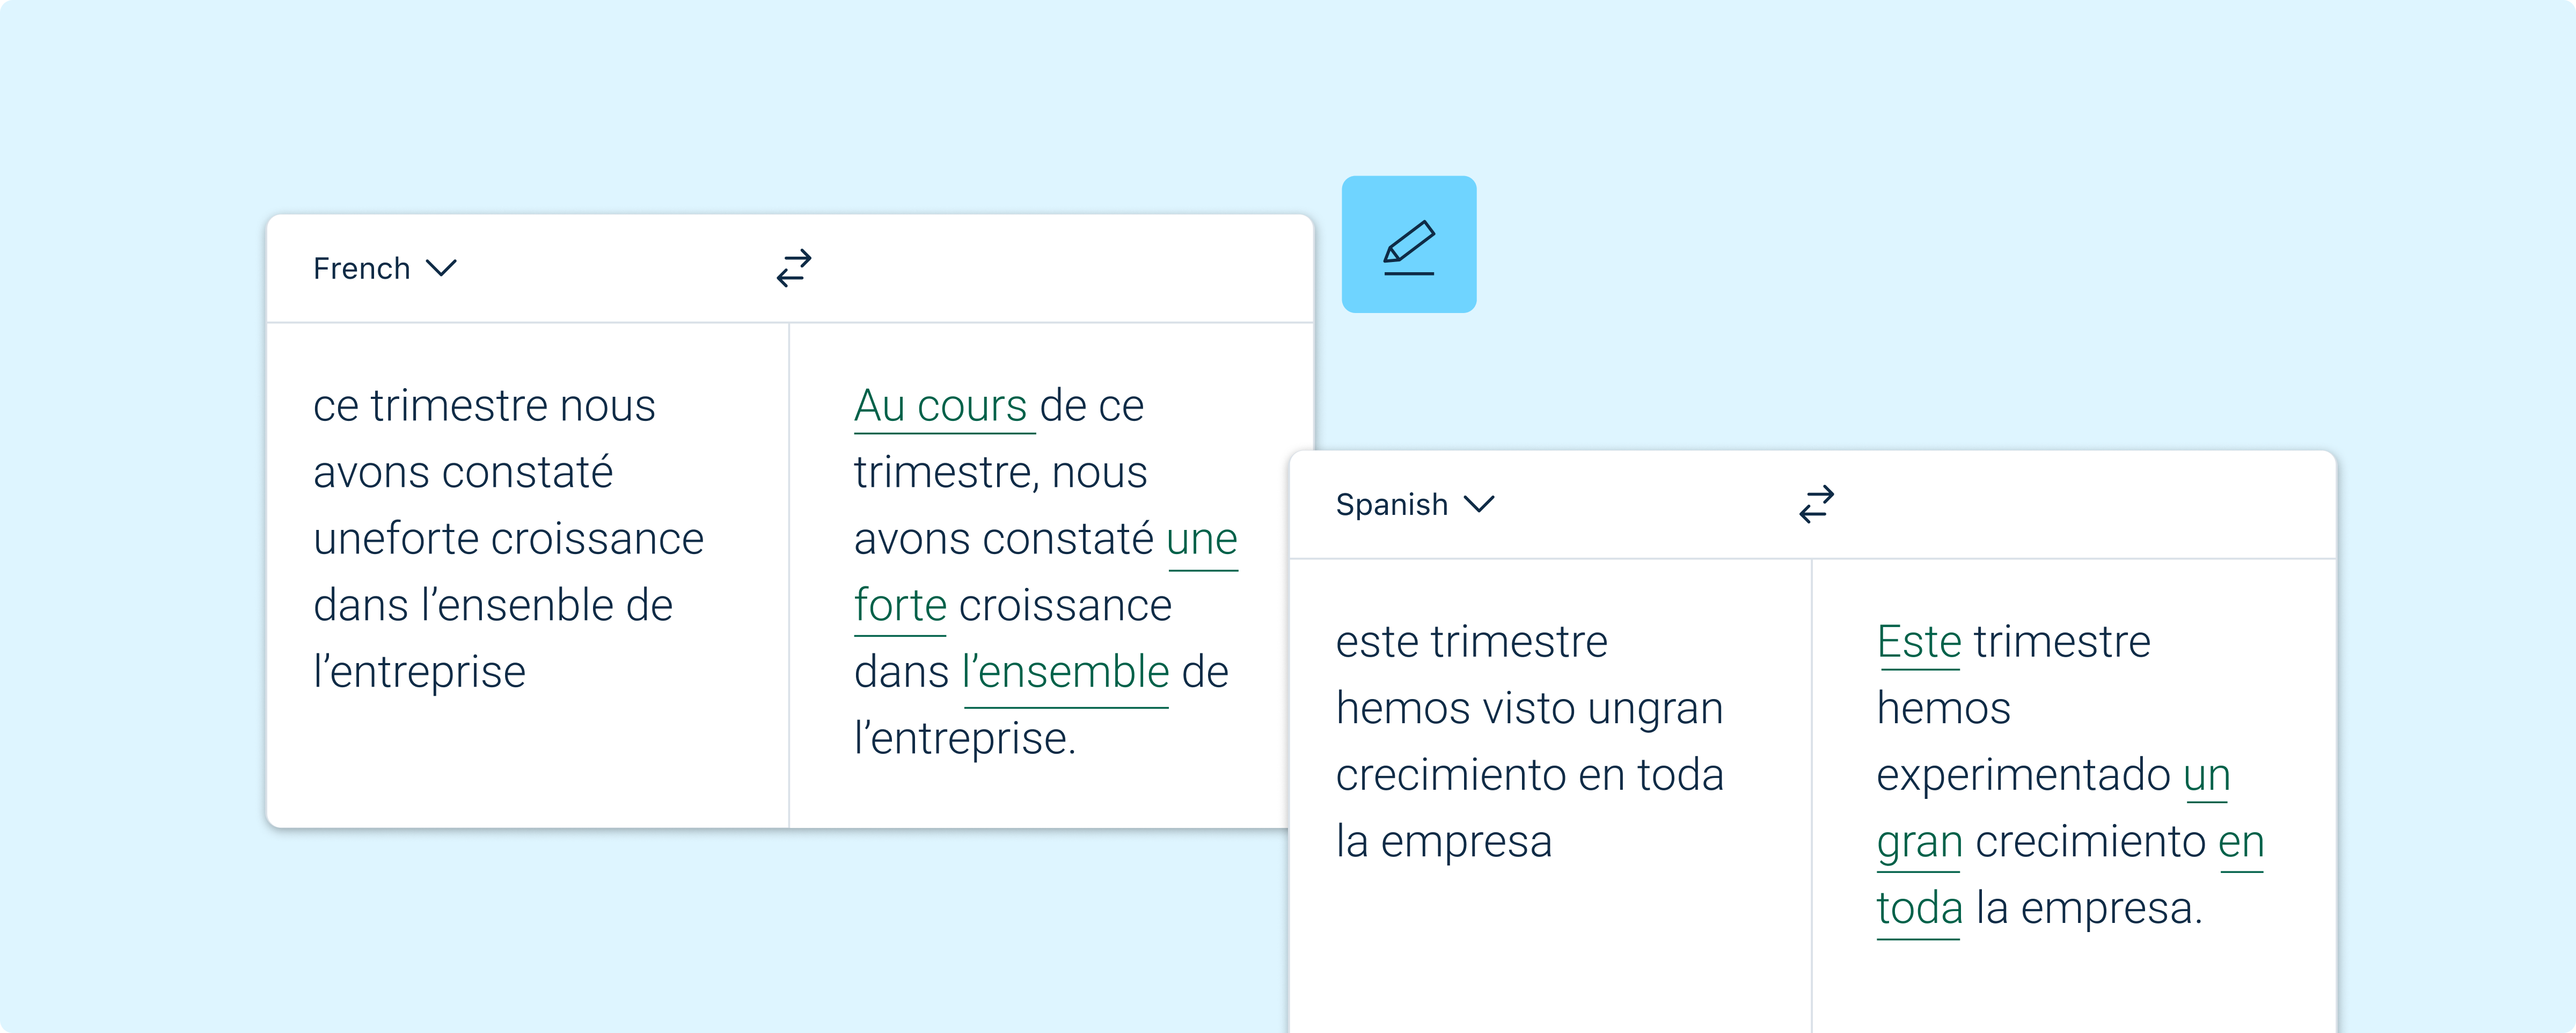 Ilustração da interface de utilizador do DeepL Write com um exemplo de correção ortográfica em francês e espanhol